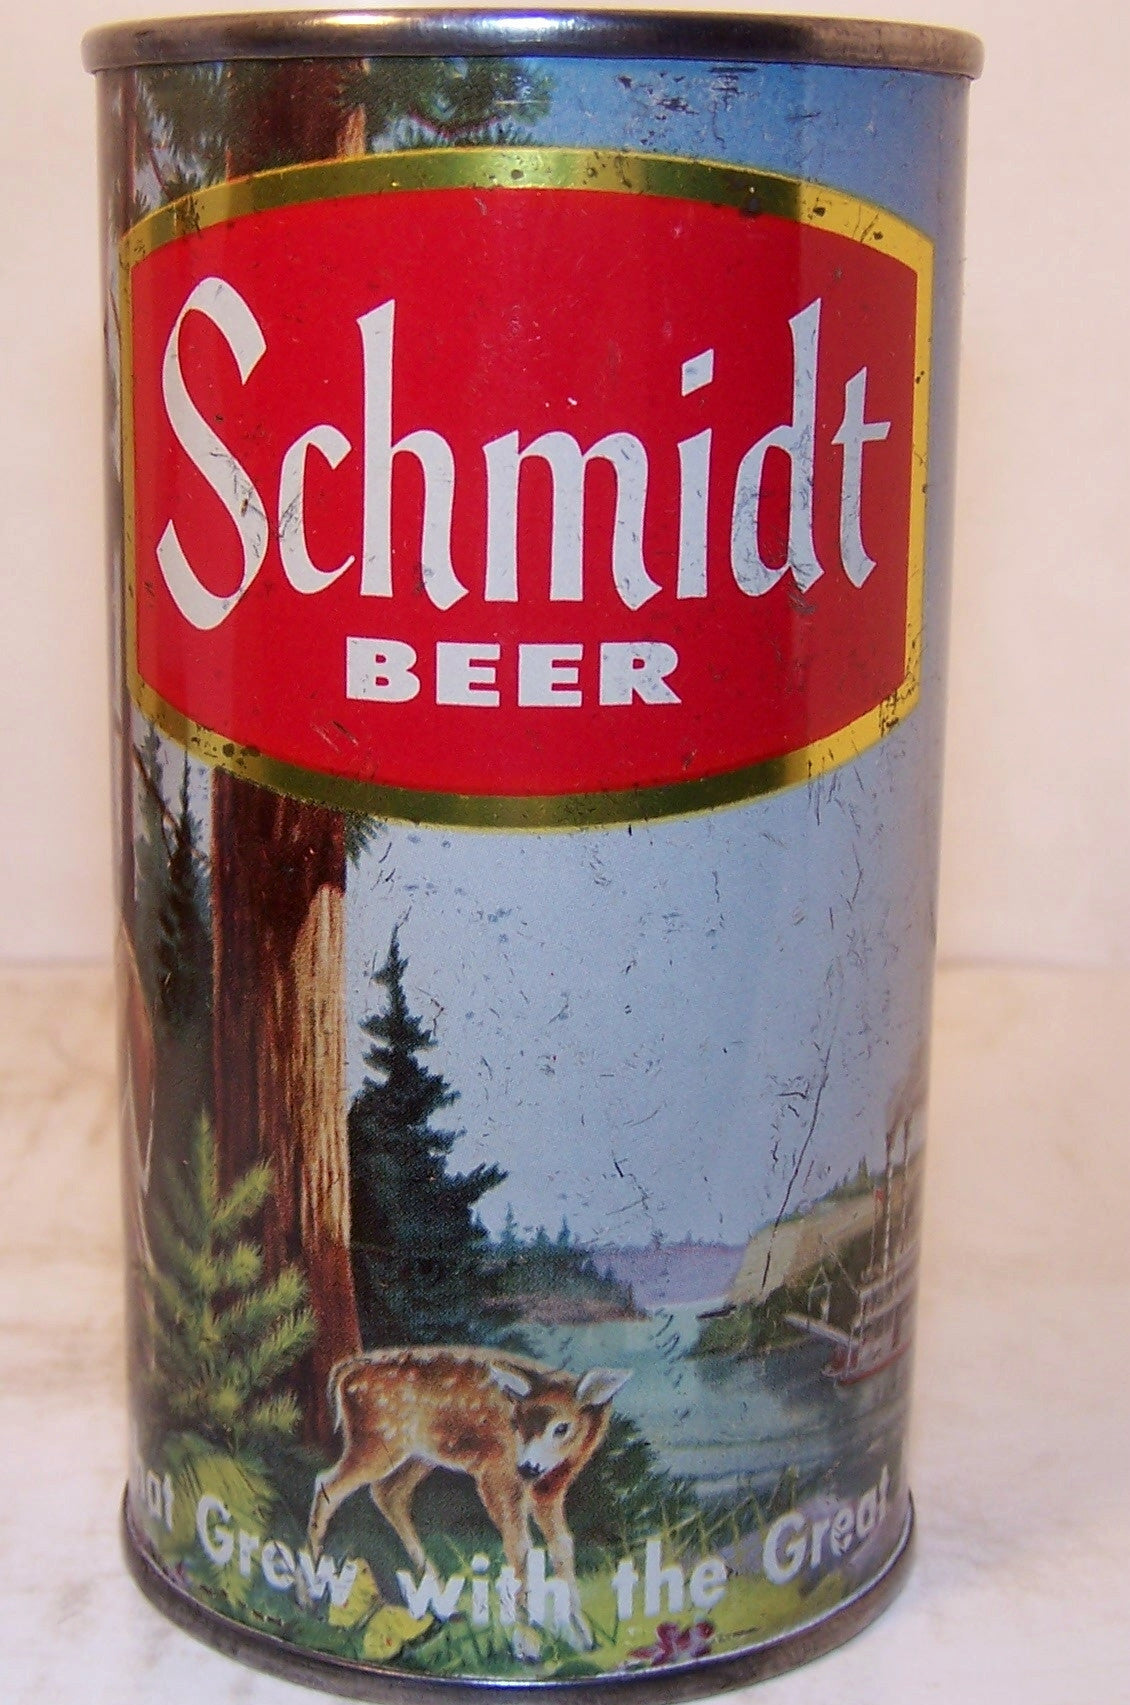 Schmidt Beer (Deer) USBC 131-4, Grade 1- Sold on 02/18/16